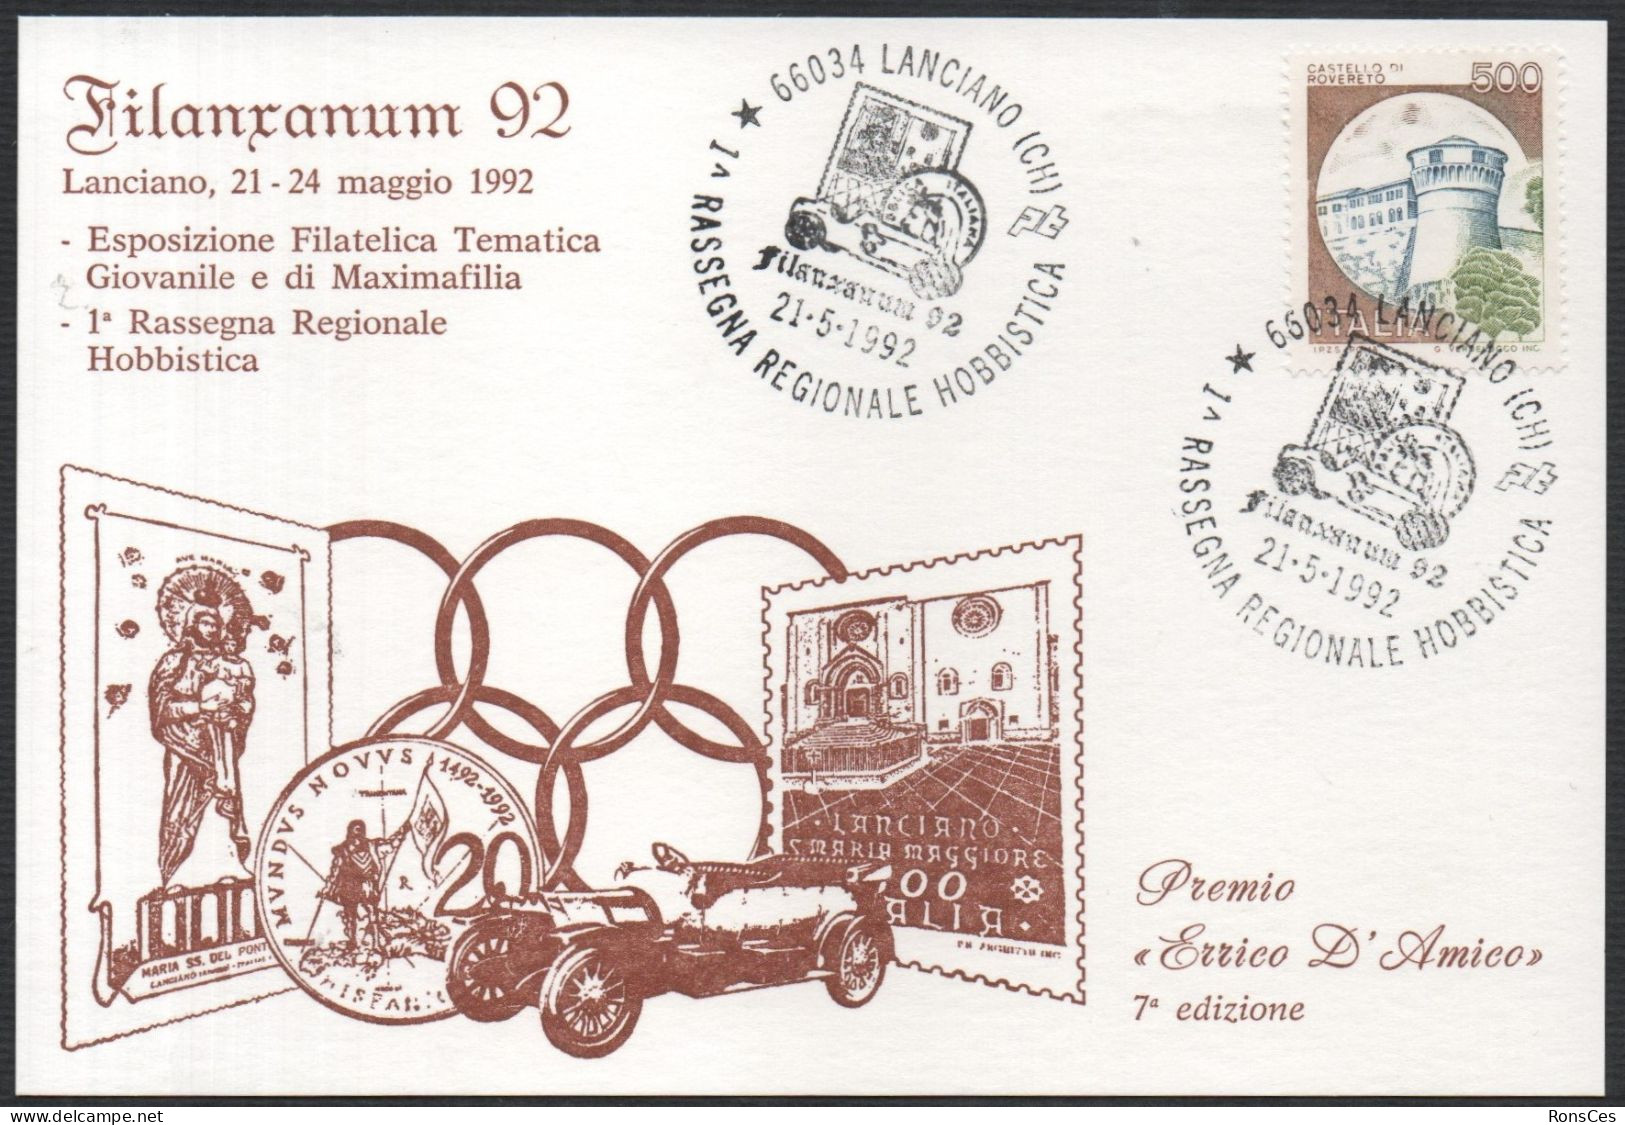 ITALIA LANCIANO (CH) 21.05.1992 - FILANXANUM '92 - 1^ RASSEGNA REGIONALE HOBBISTICA - CARTOLINA UFFICIALE - A - Philatelic Exhibitions